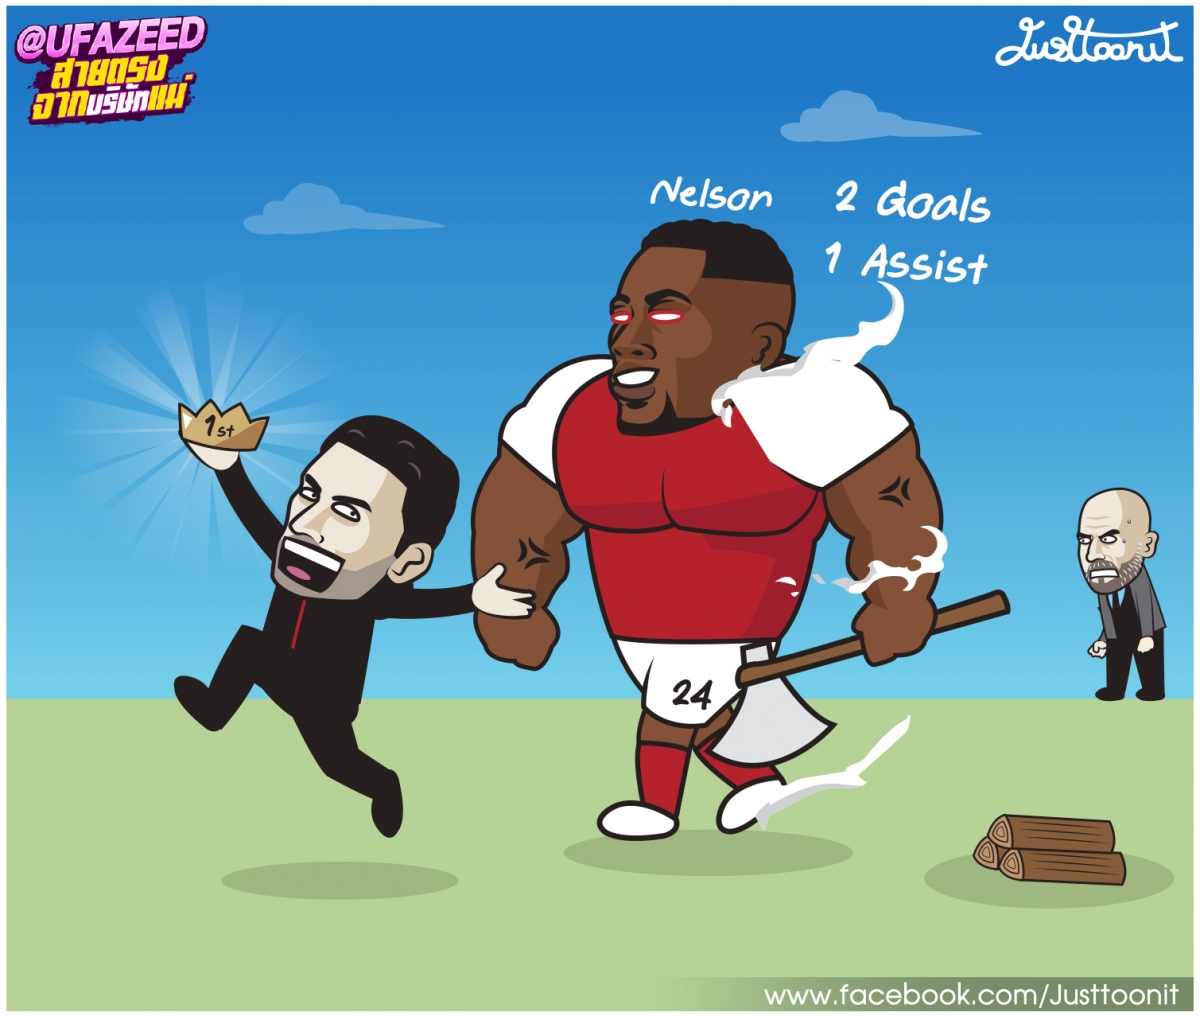 Biếm họa 24h: "Chiến thần" Nelson giúp Arsenal vững ngôi đầu Ngoại hạng Anh